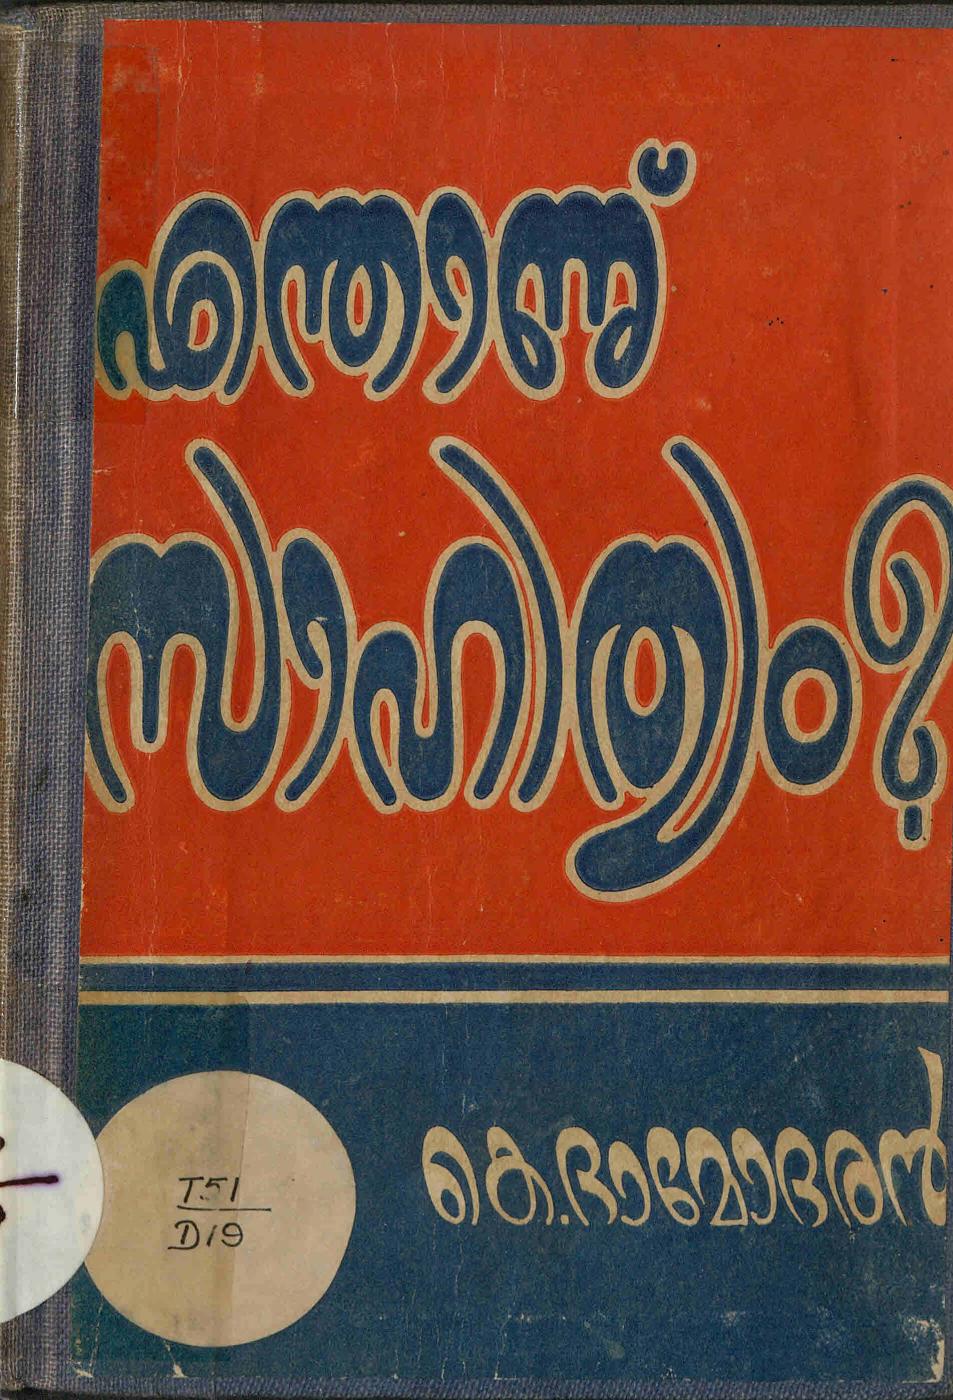  1956 - എന്താണ് സാഹിത്യം - കെ. ദാമോദരൻ